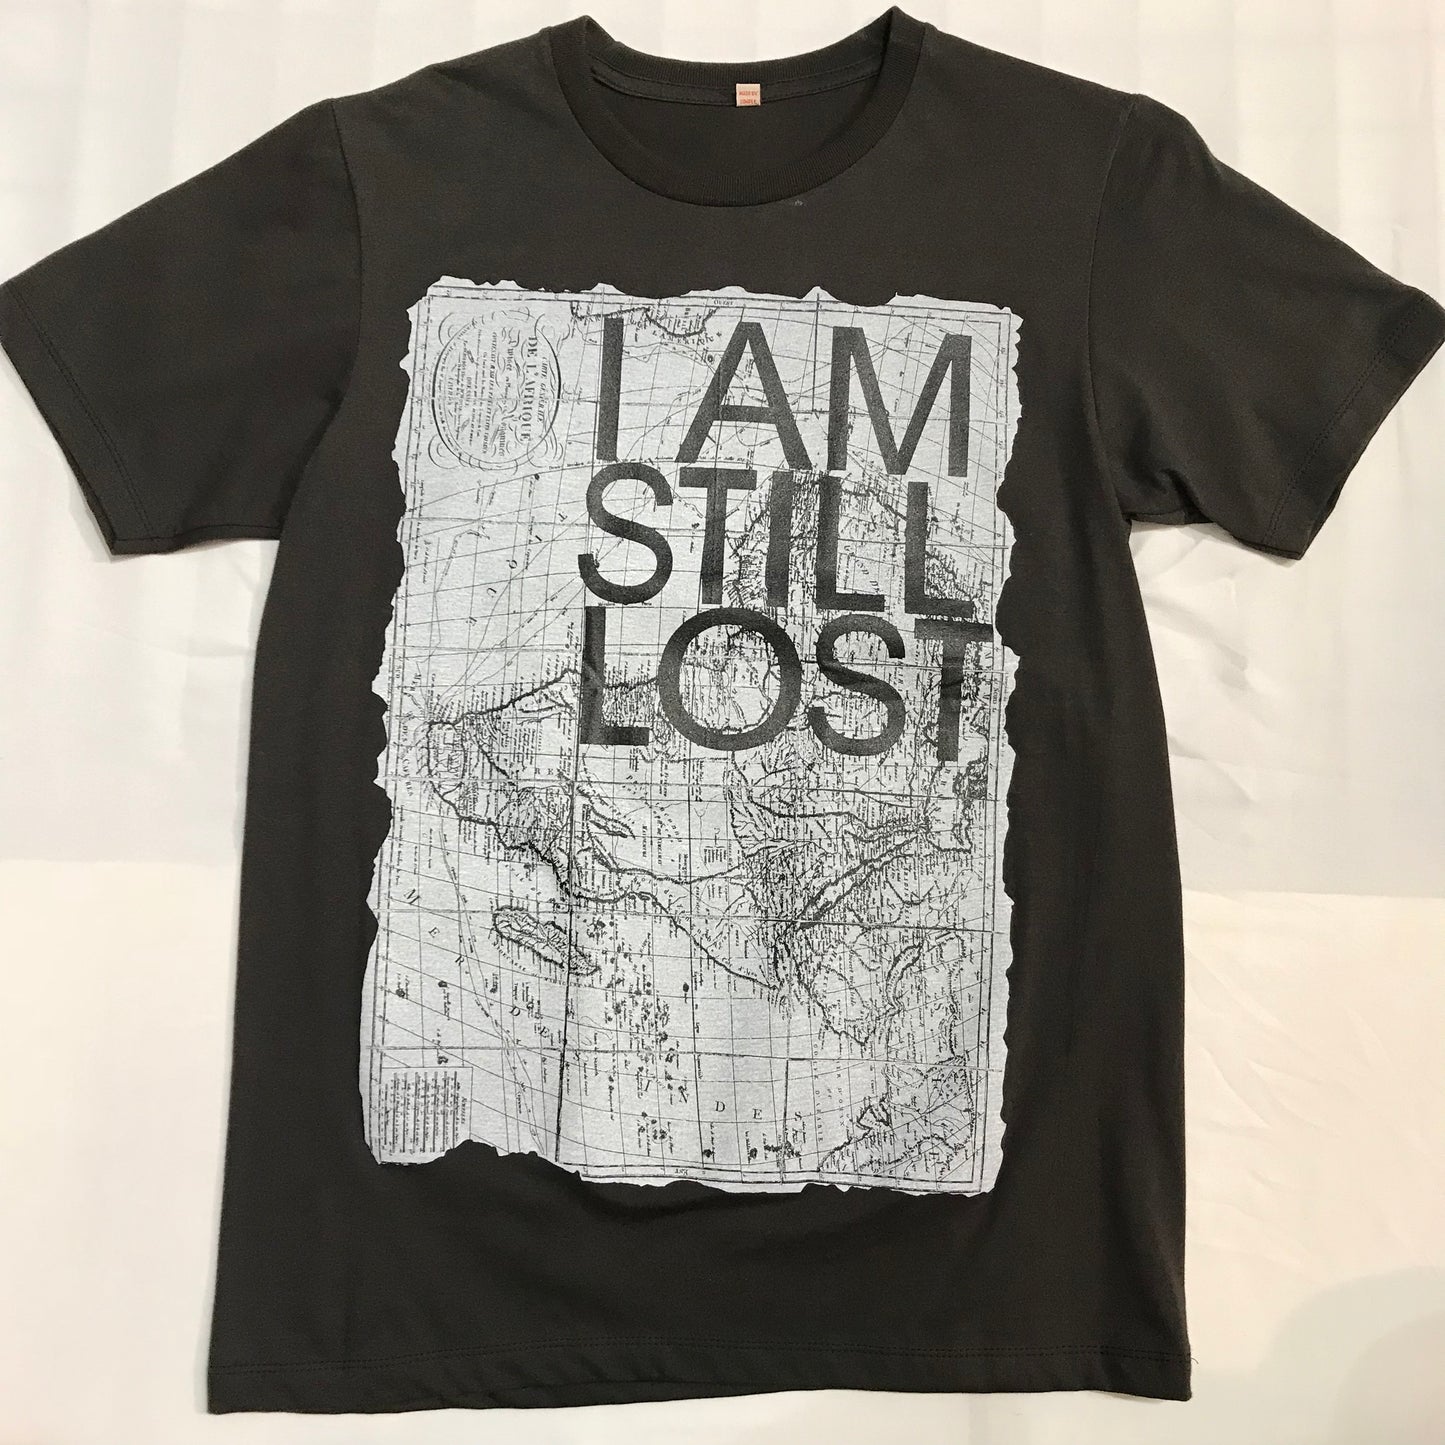 I am still lost